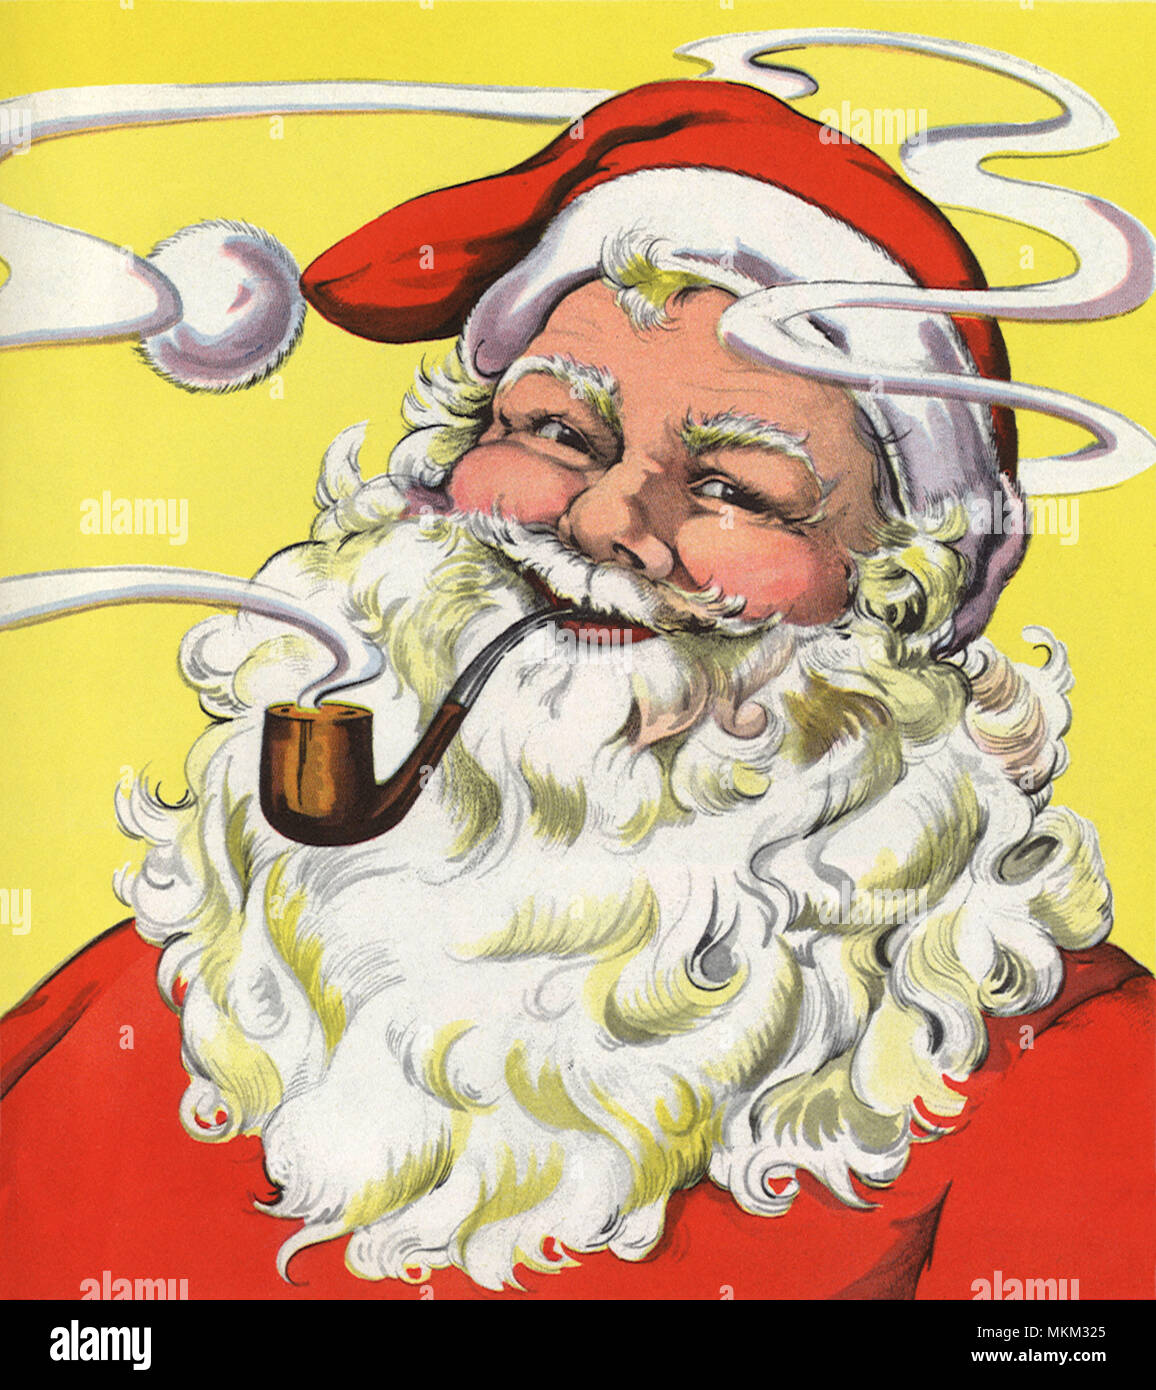 Smoking Santa Stock Photo